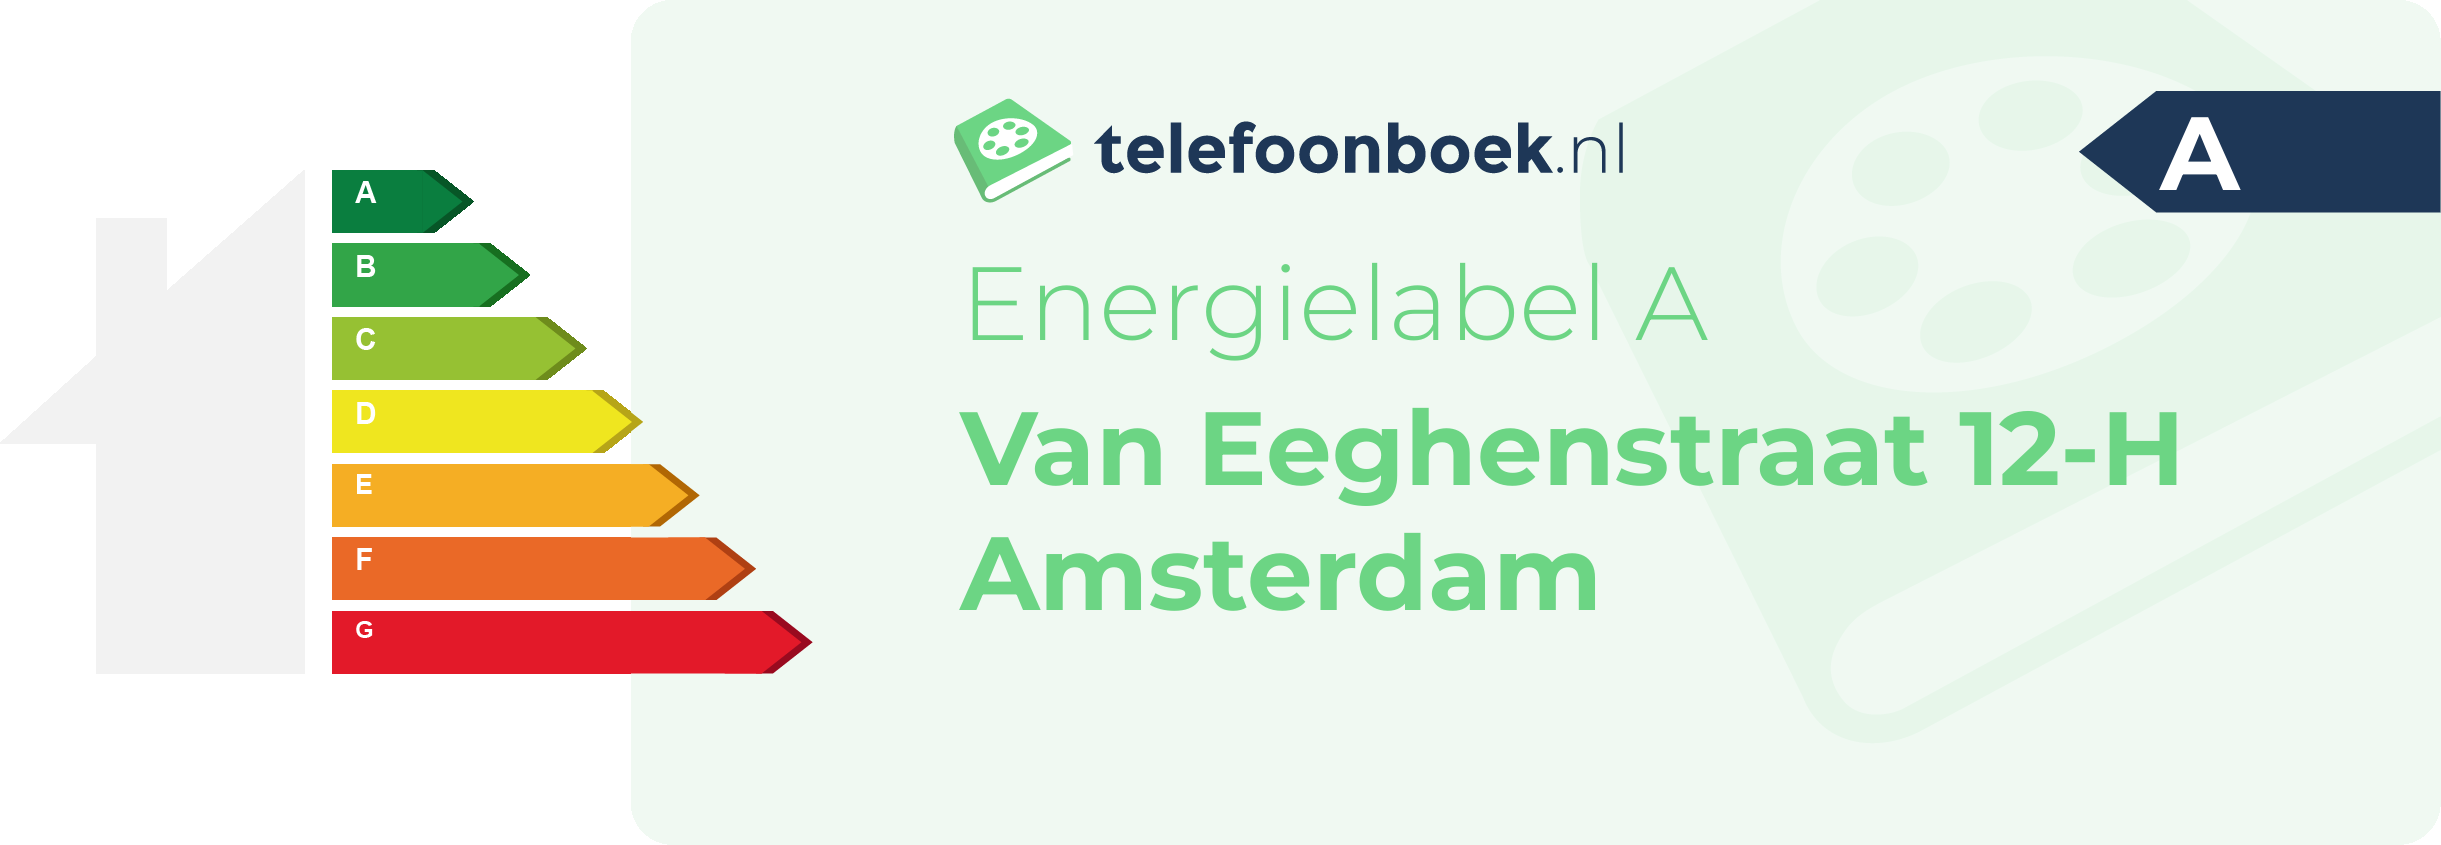 Energielabel Van Eeghenstraat 12-H Amsterdam